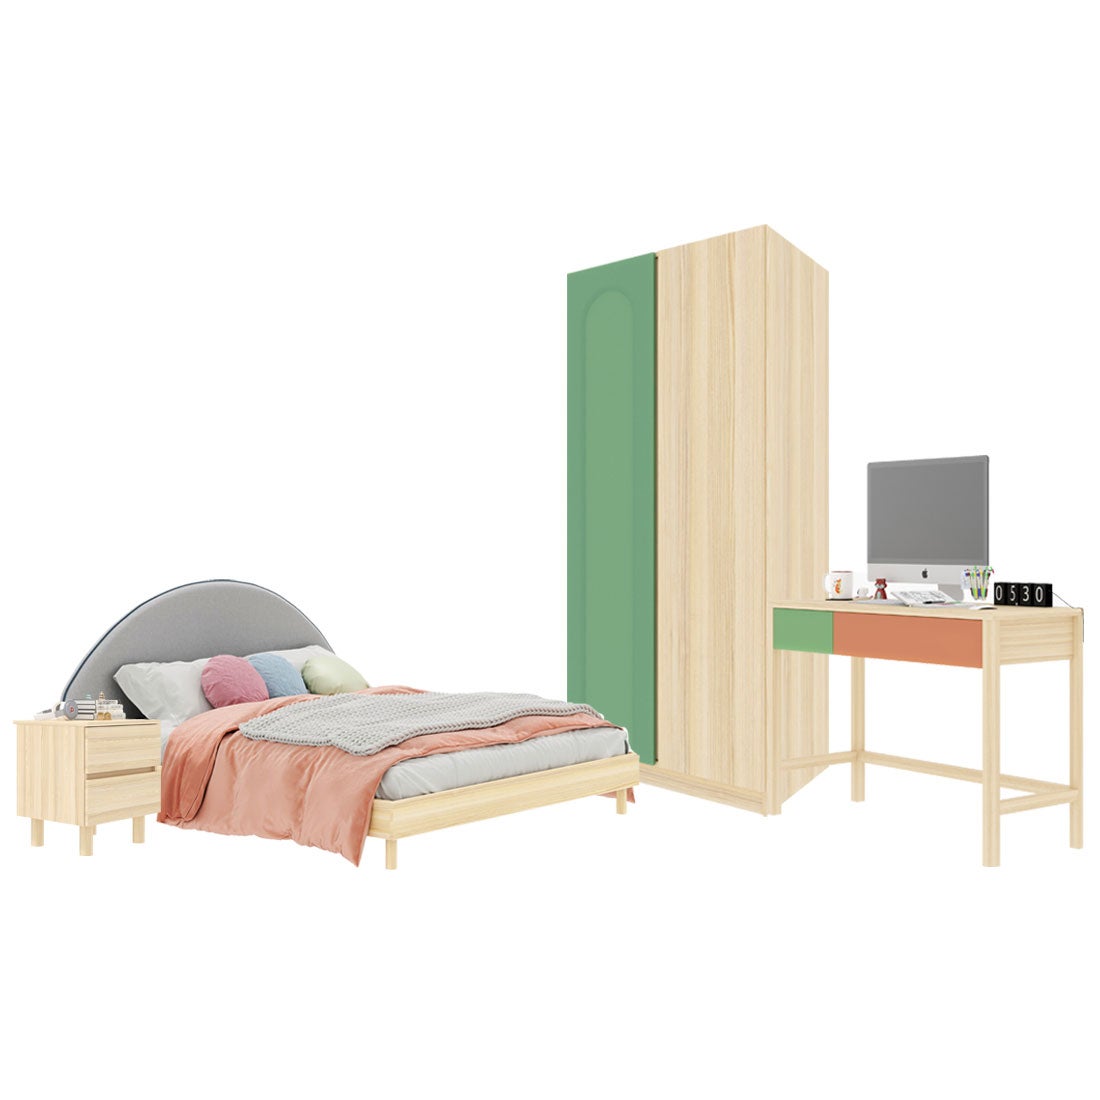 ชุดห้องนอน ขนาด 6 ฟุต-เบาะครีม รุ่น Bingsoo & ตู้เสื้อผ้า 90 ซม. พร้อมตู้ข้างเตียง สีเขียว01